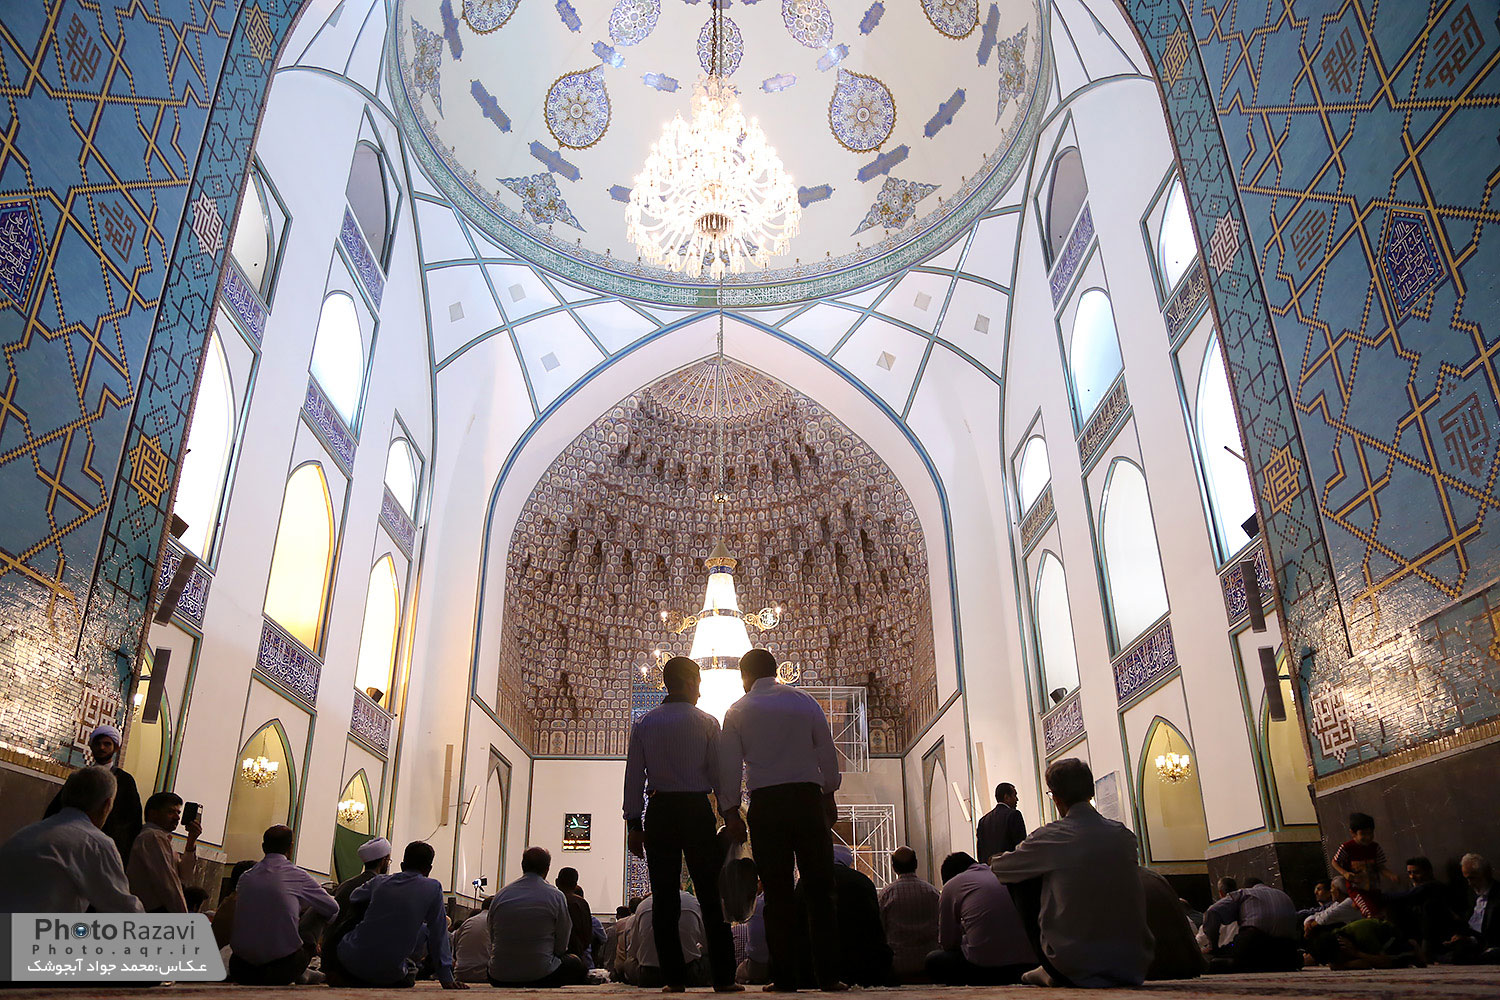  مسجد، پایگاه هدایت بشریت است